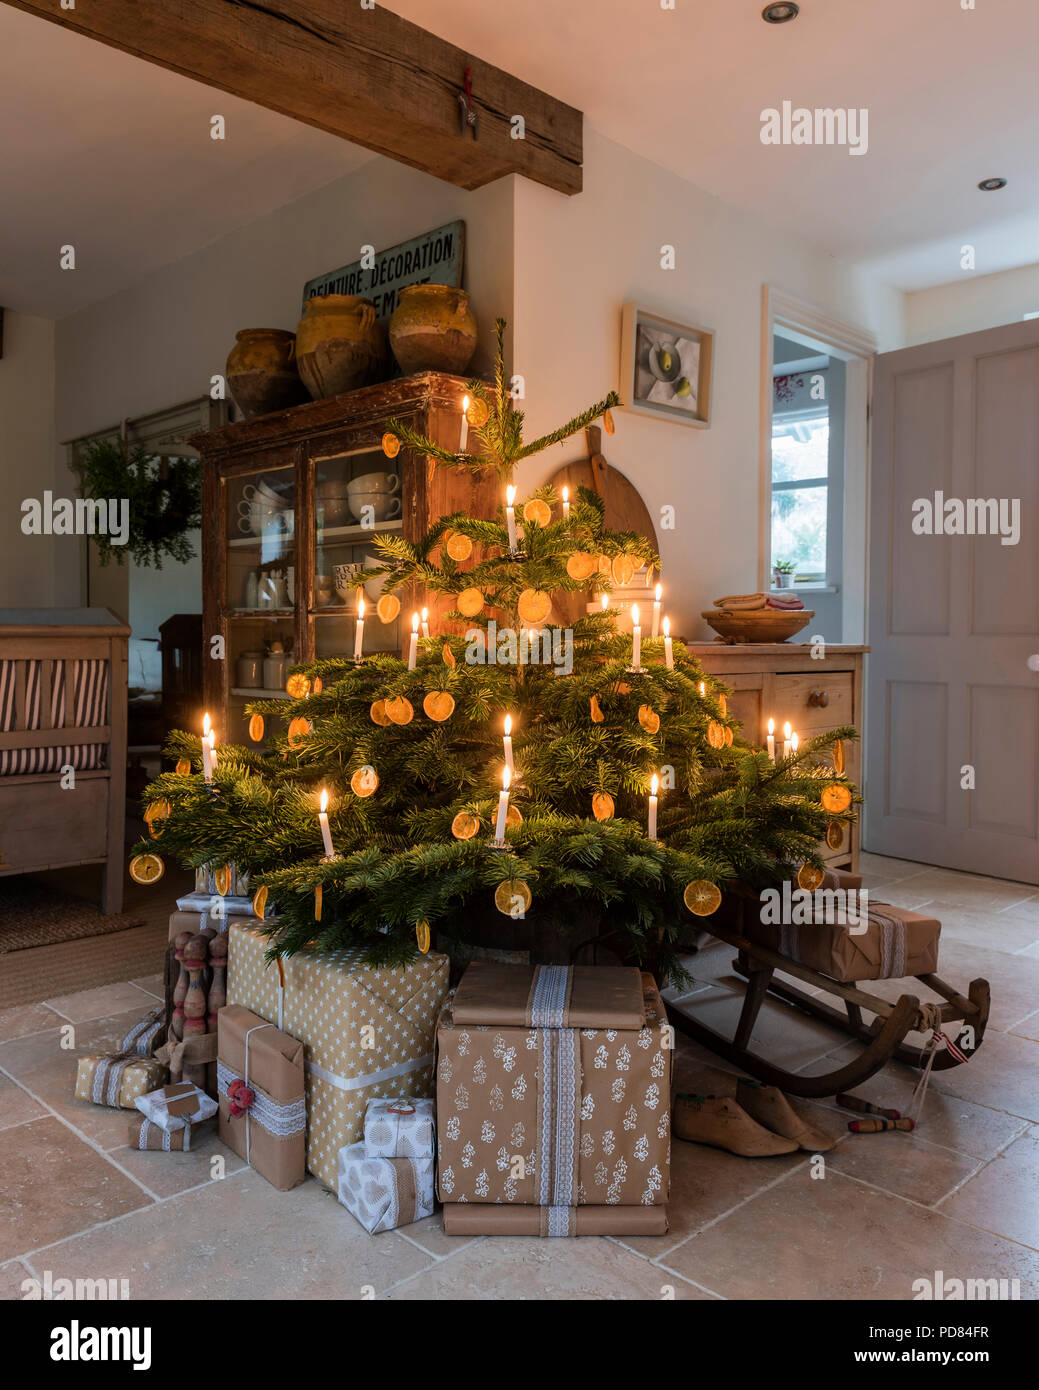 Candela albero di Natale illuminato in cottage cucina con soffitto con travi in legno a vista e regali impacchettati Foto Stock